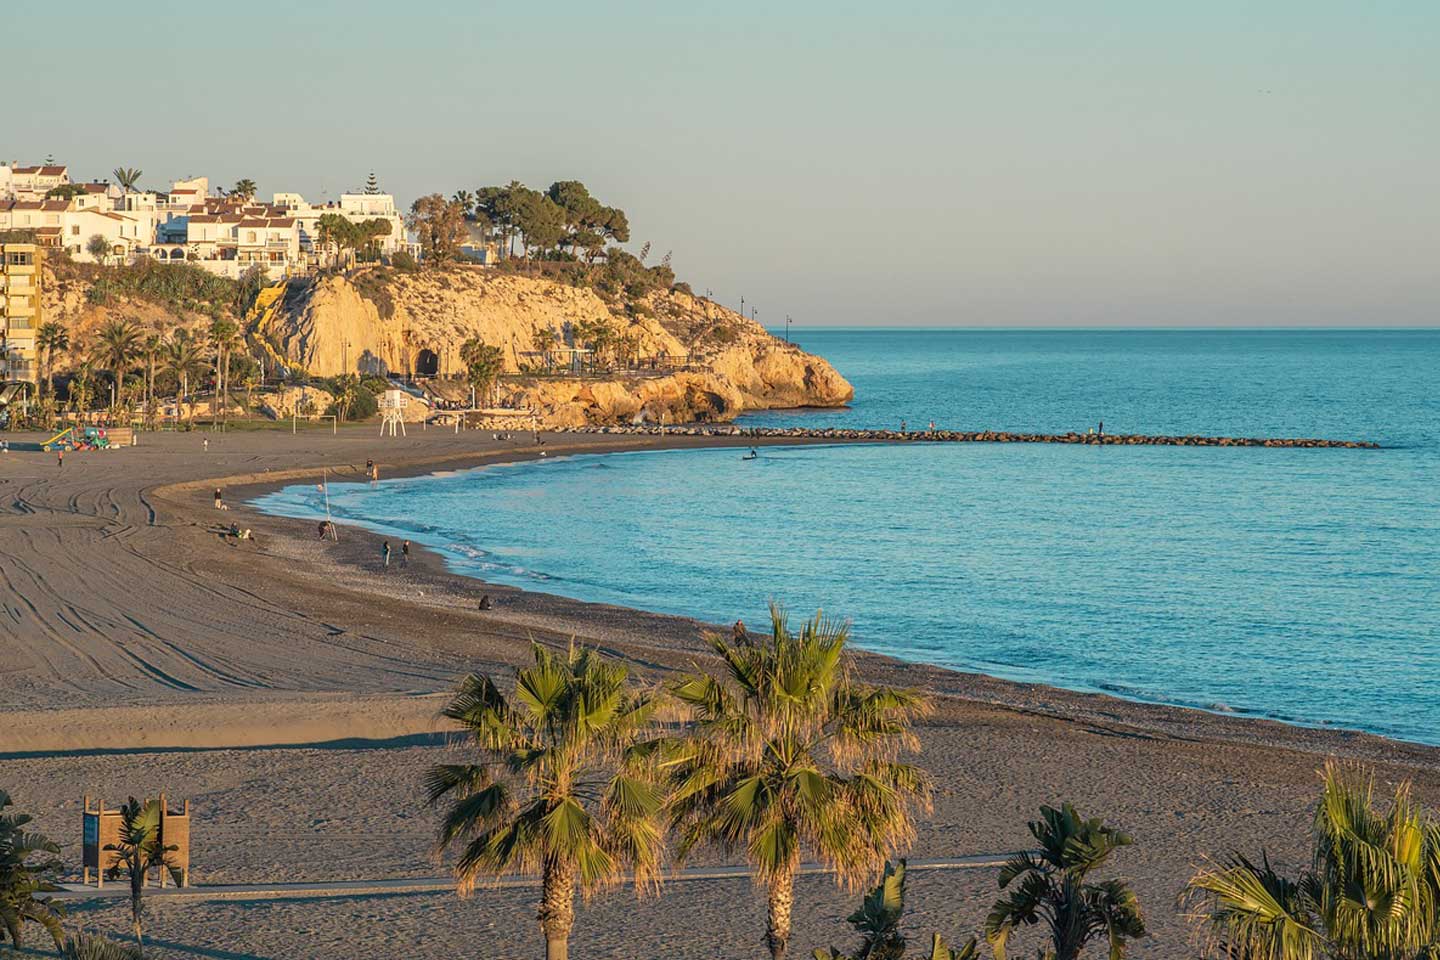 Beach view of Malaga